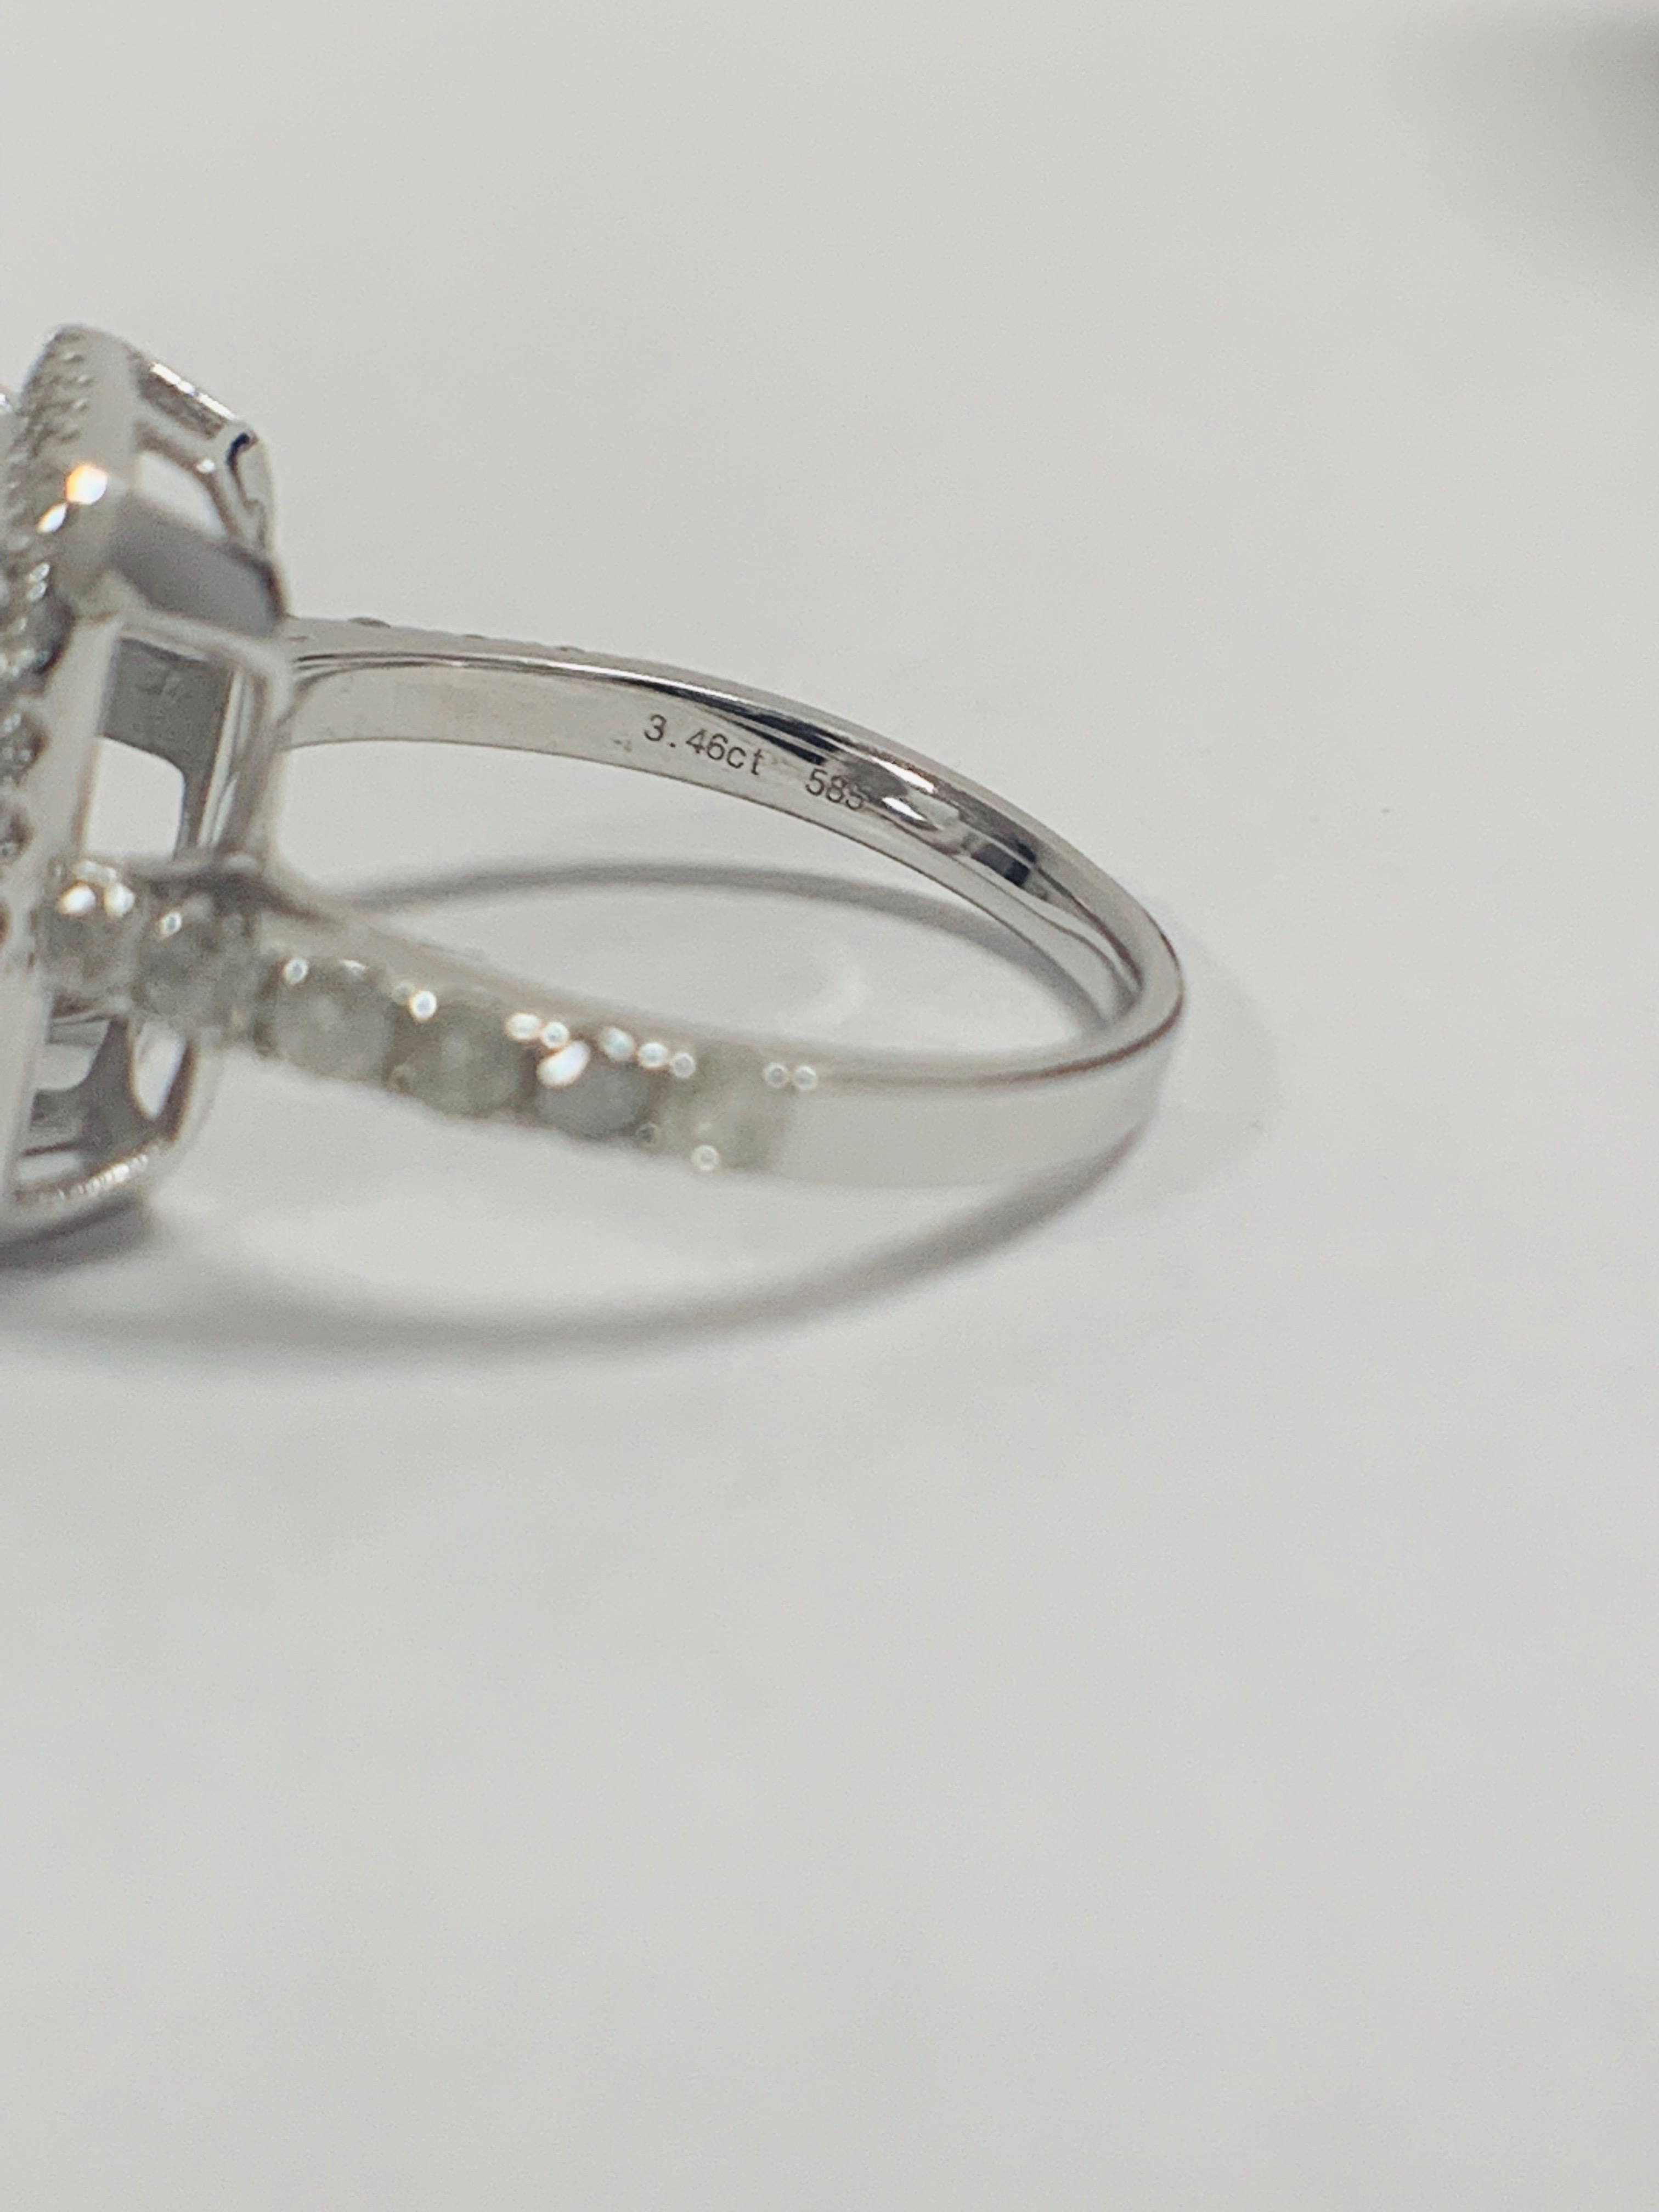 14ct White Gold Aquamarine and Diamond ring - Image 4 of 12